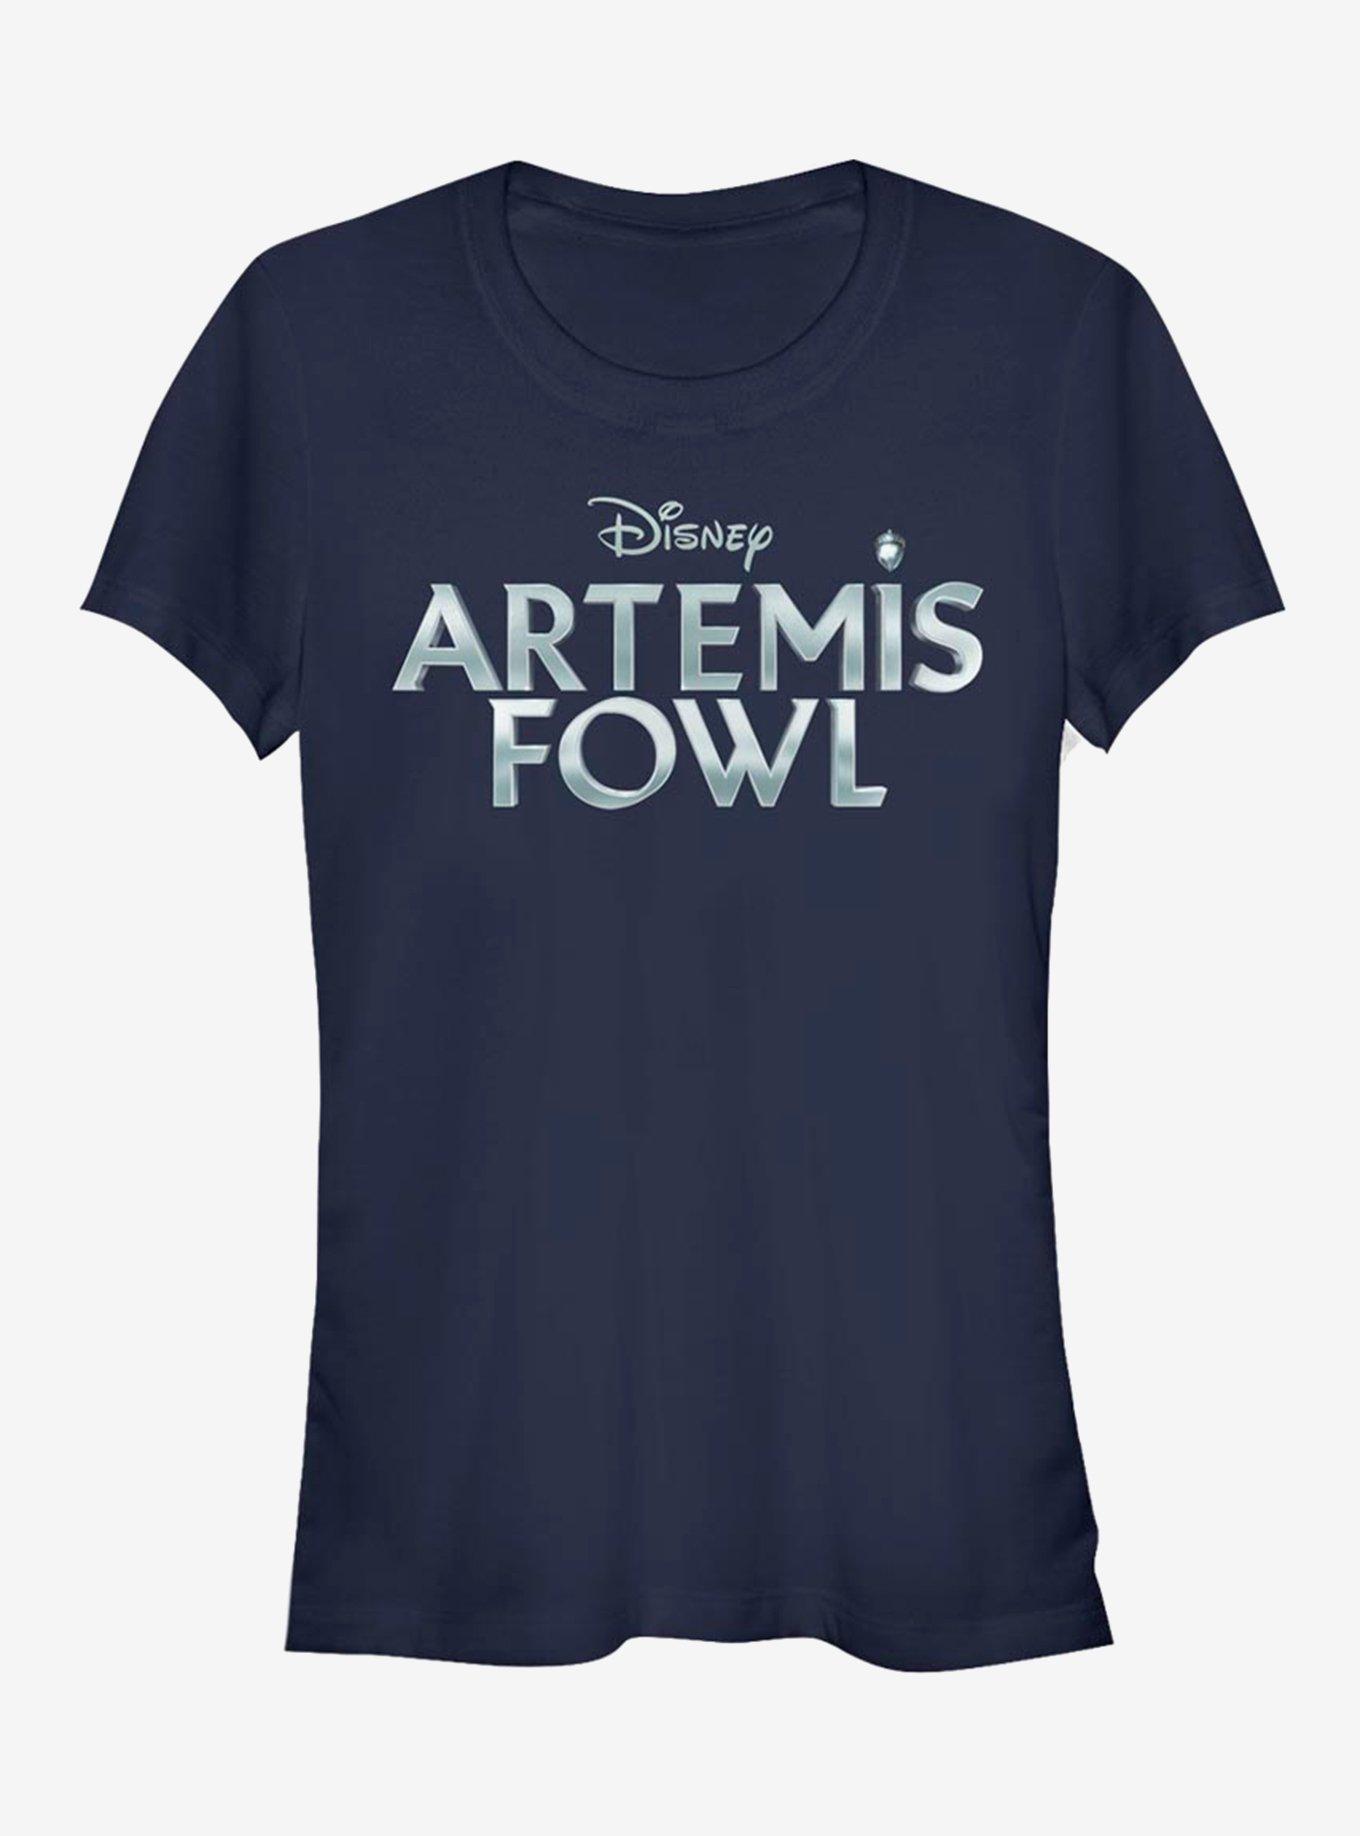 Disney Artemis Fowl Metallic Logo Girls T-Shirt, NAVY, hi-res